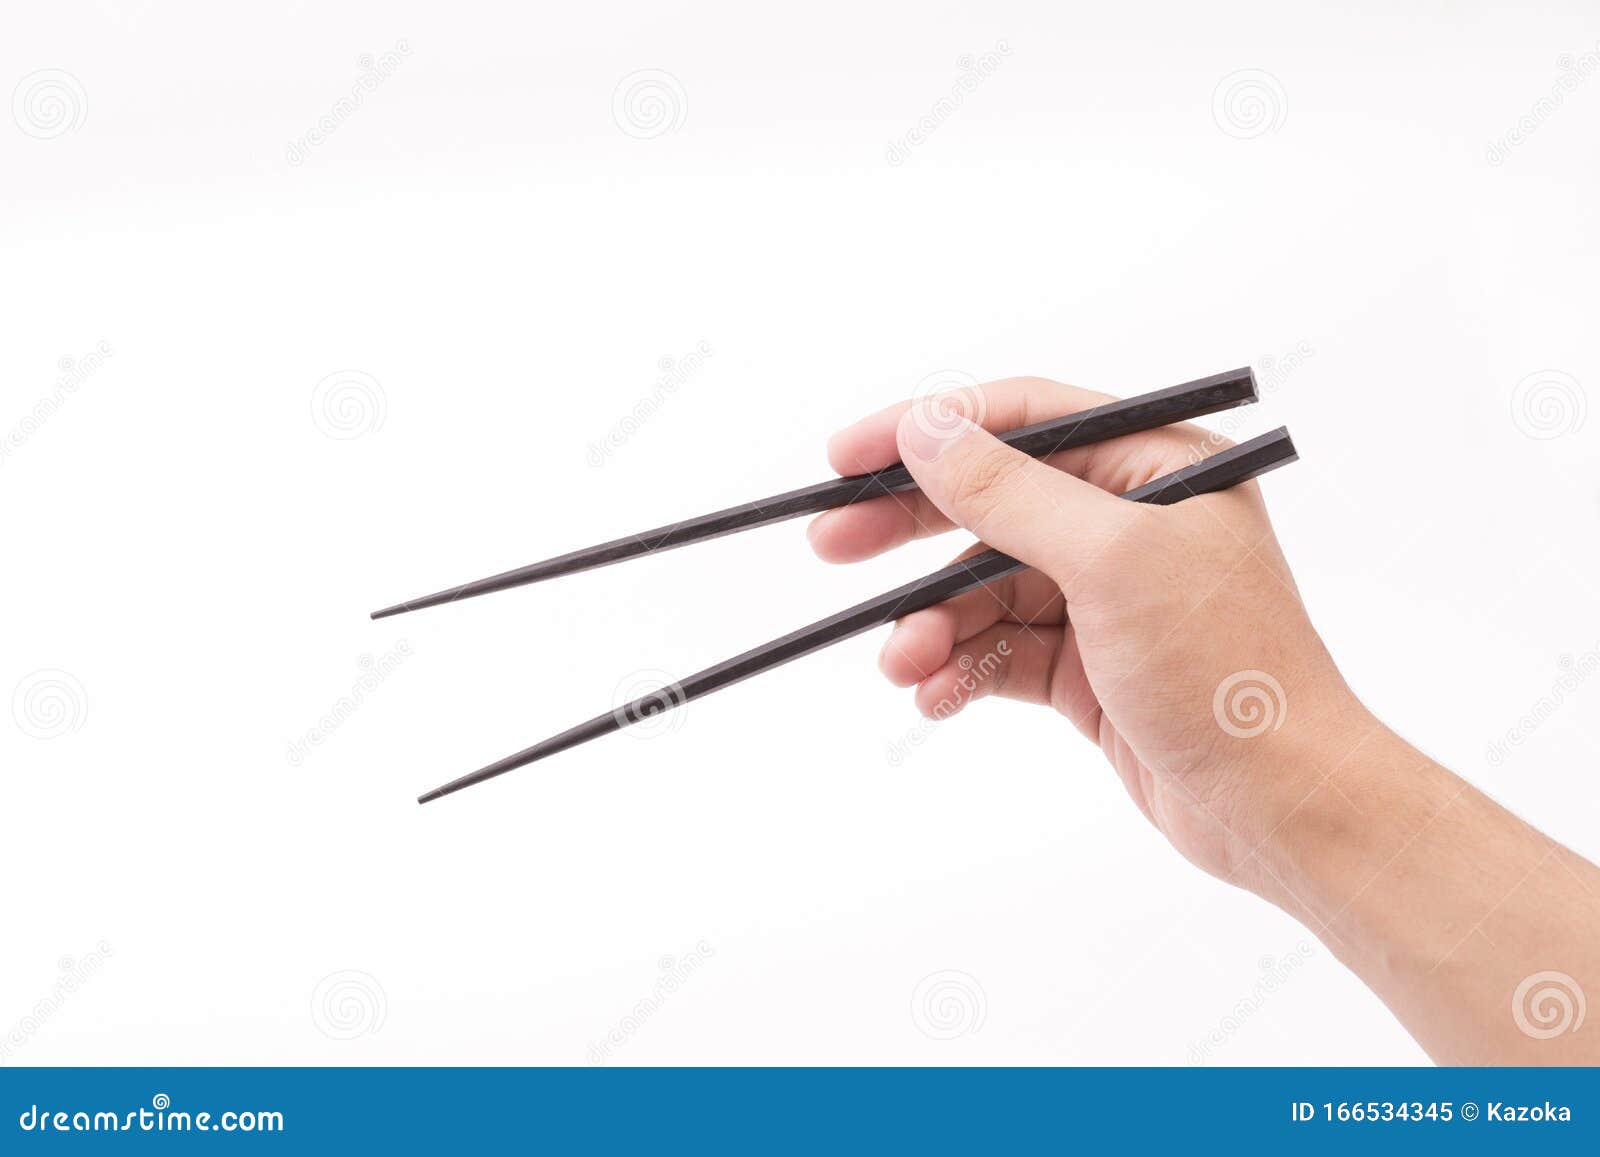 学会用筷子吃饭有多难？